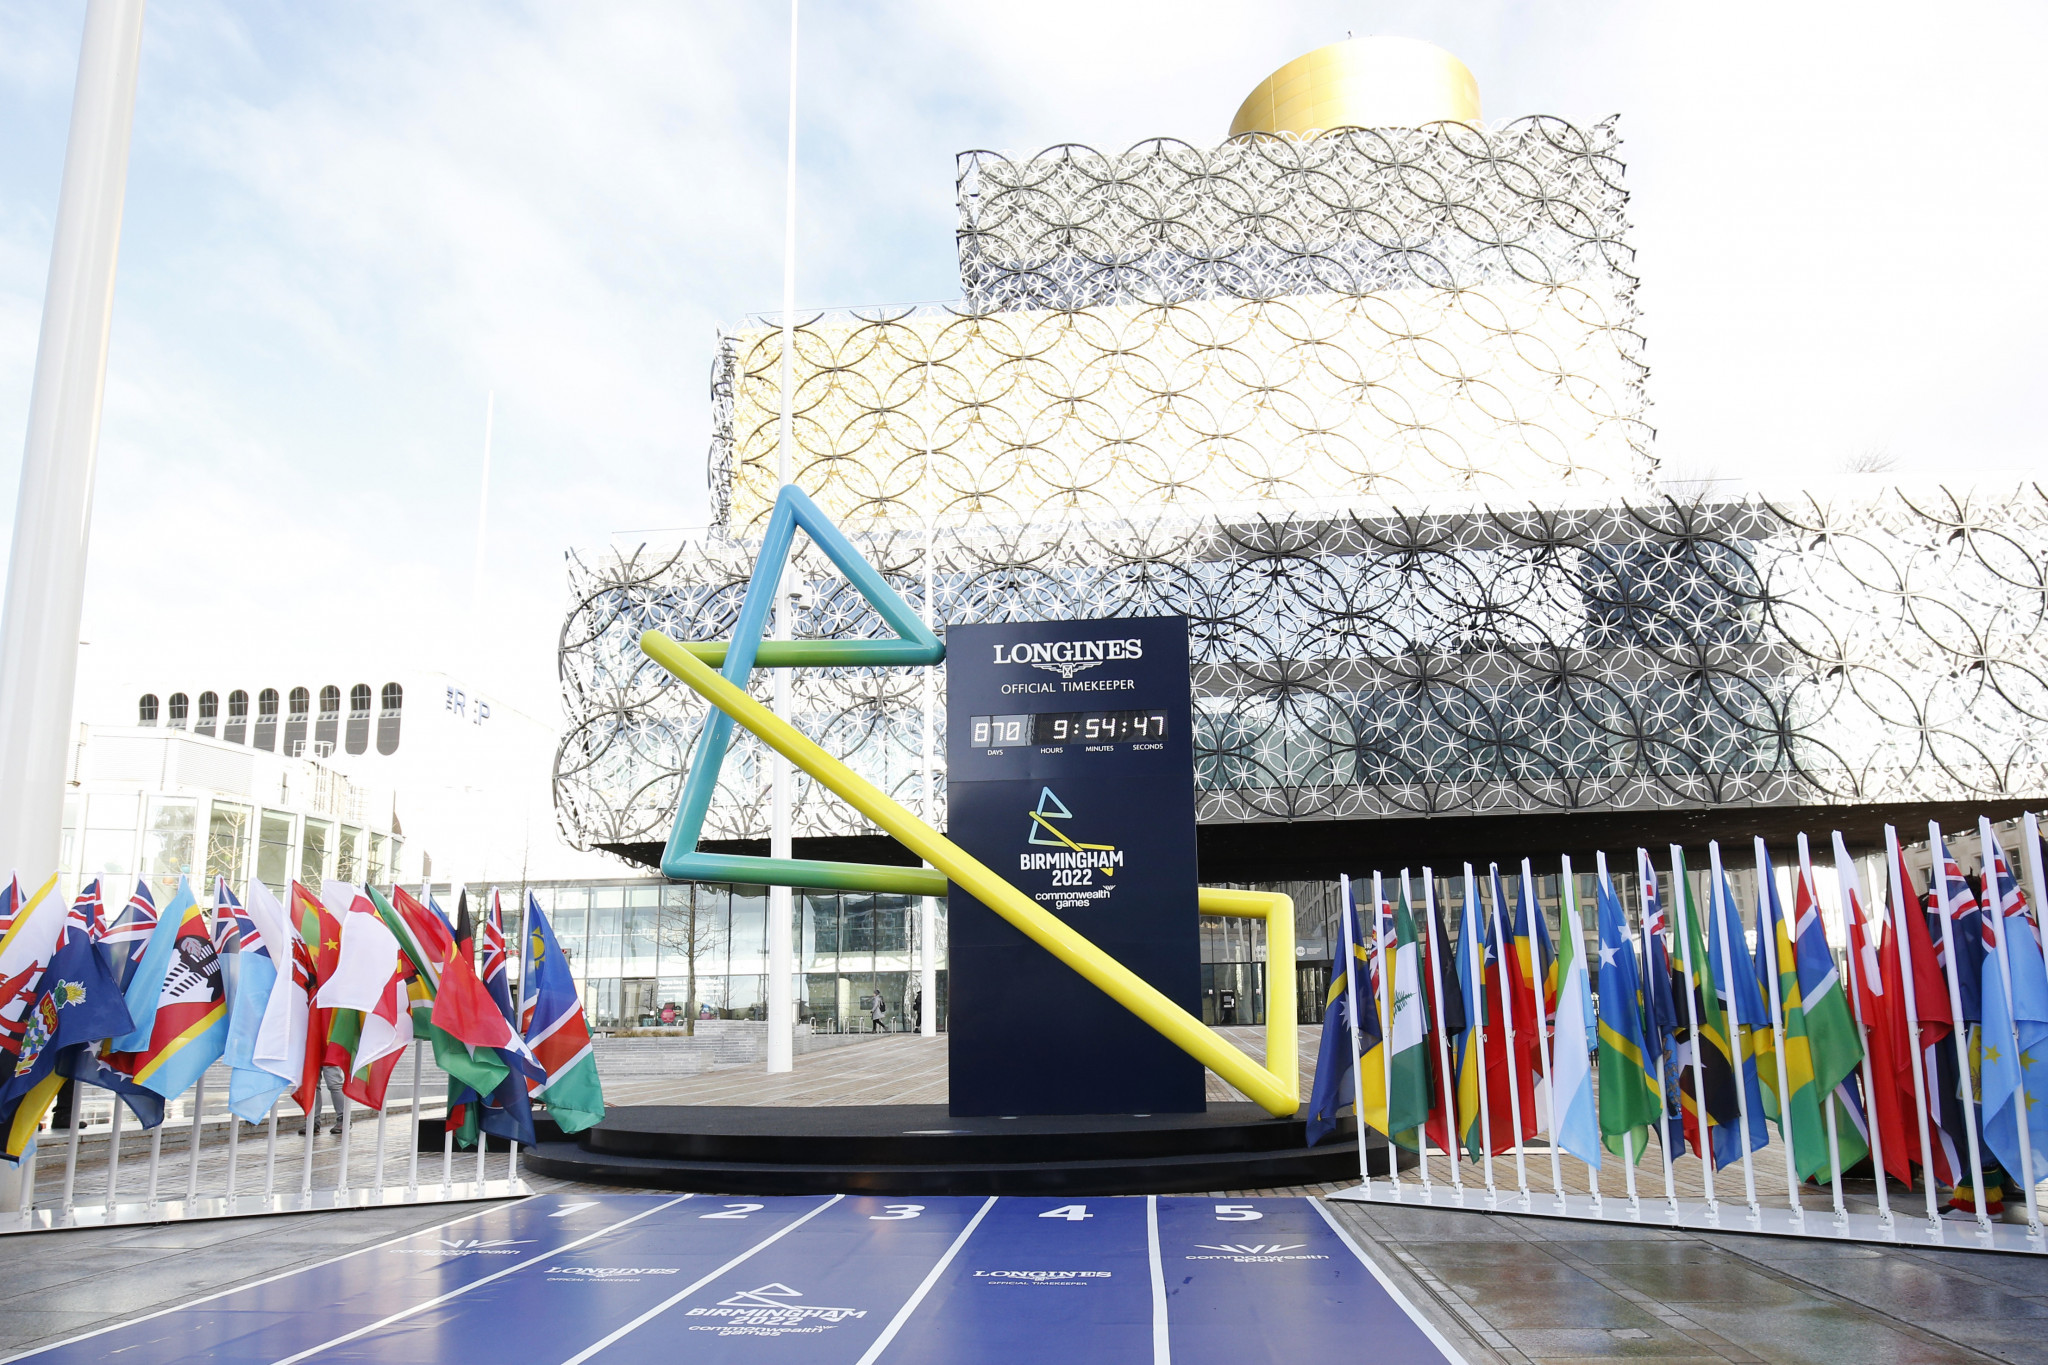 Sunset+Vine named host broadcaster for Birmingham 2022 Commonwealth Games